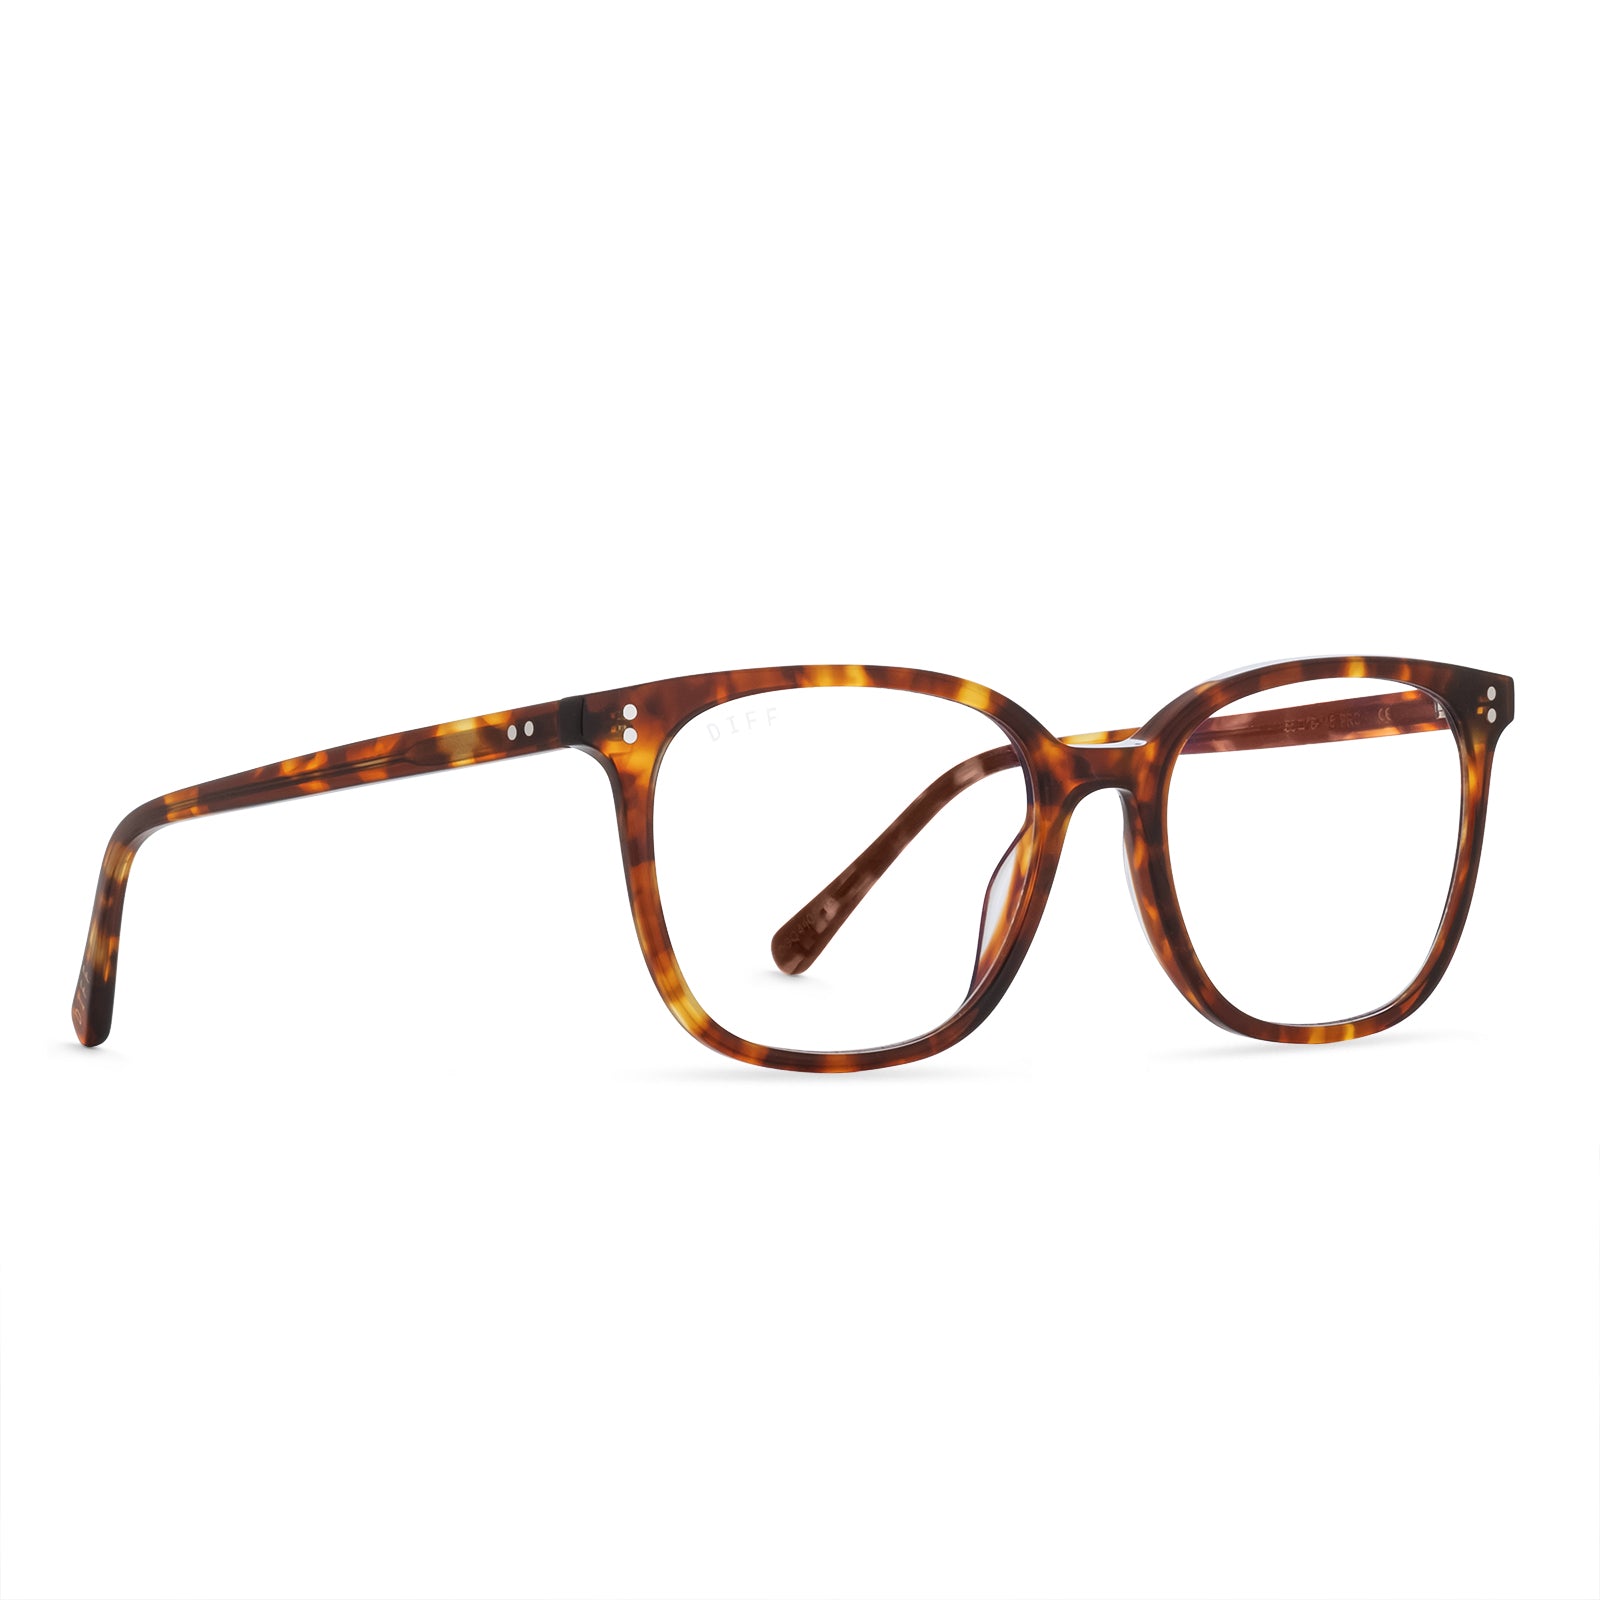 Clarke Square Glasses | Amber Tortoise & Blue Light Technology | DIFF ...